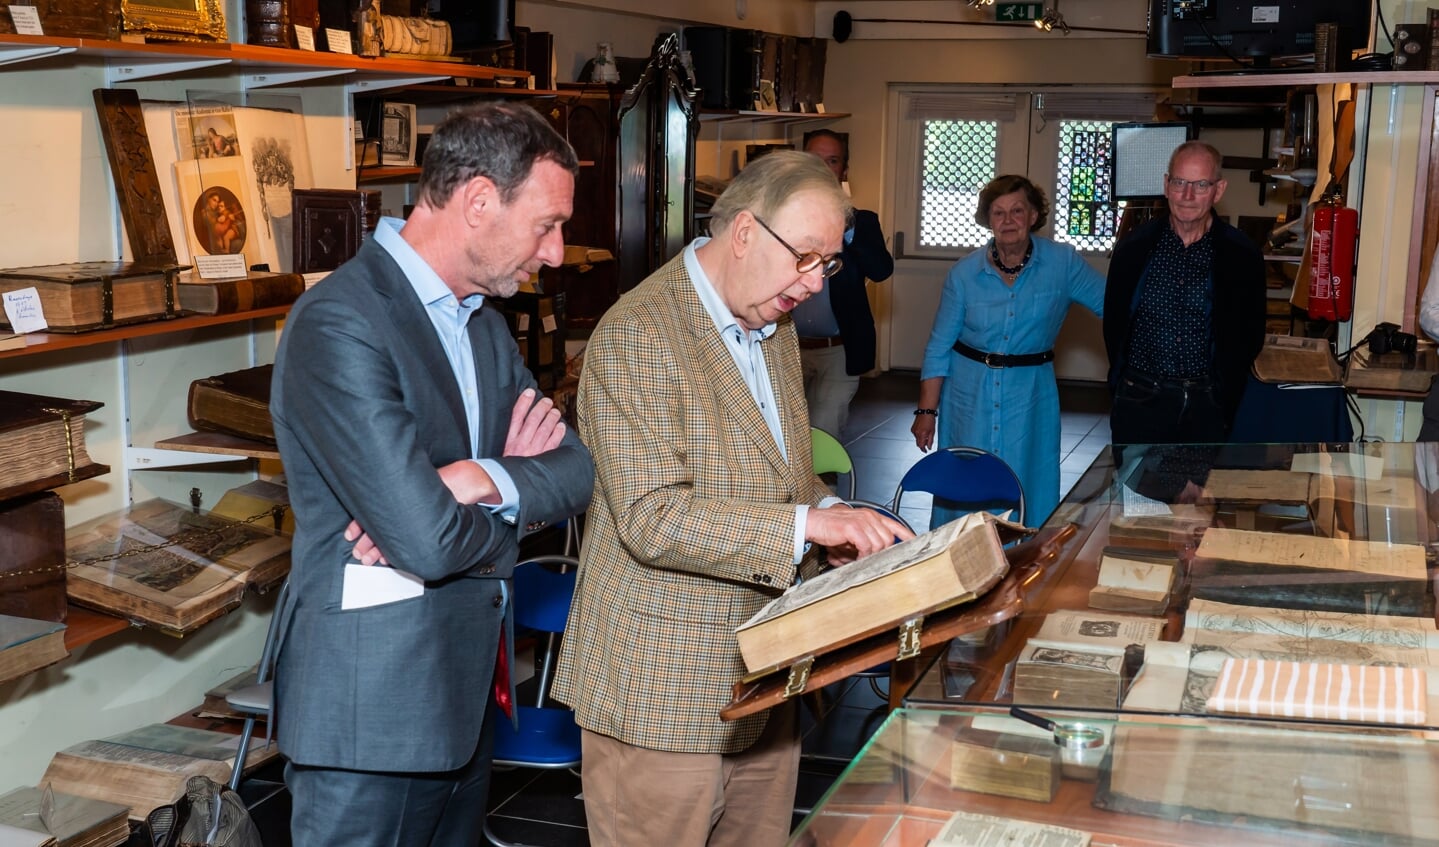 Nederlandse Bijbel uit 1654 naar Bijbelmuseum in Leerdam